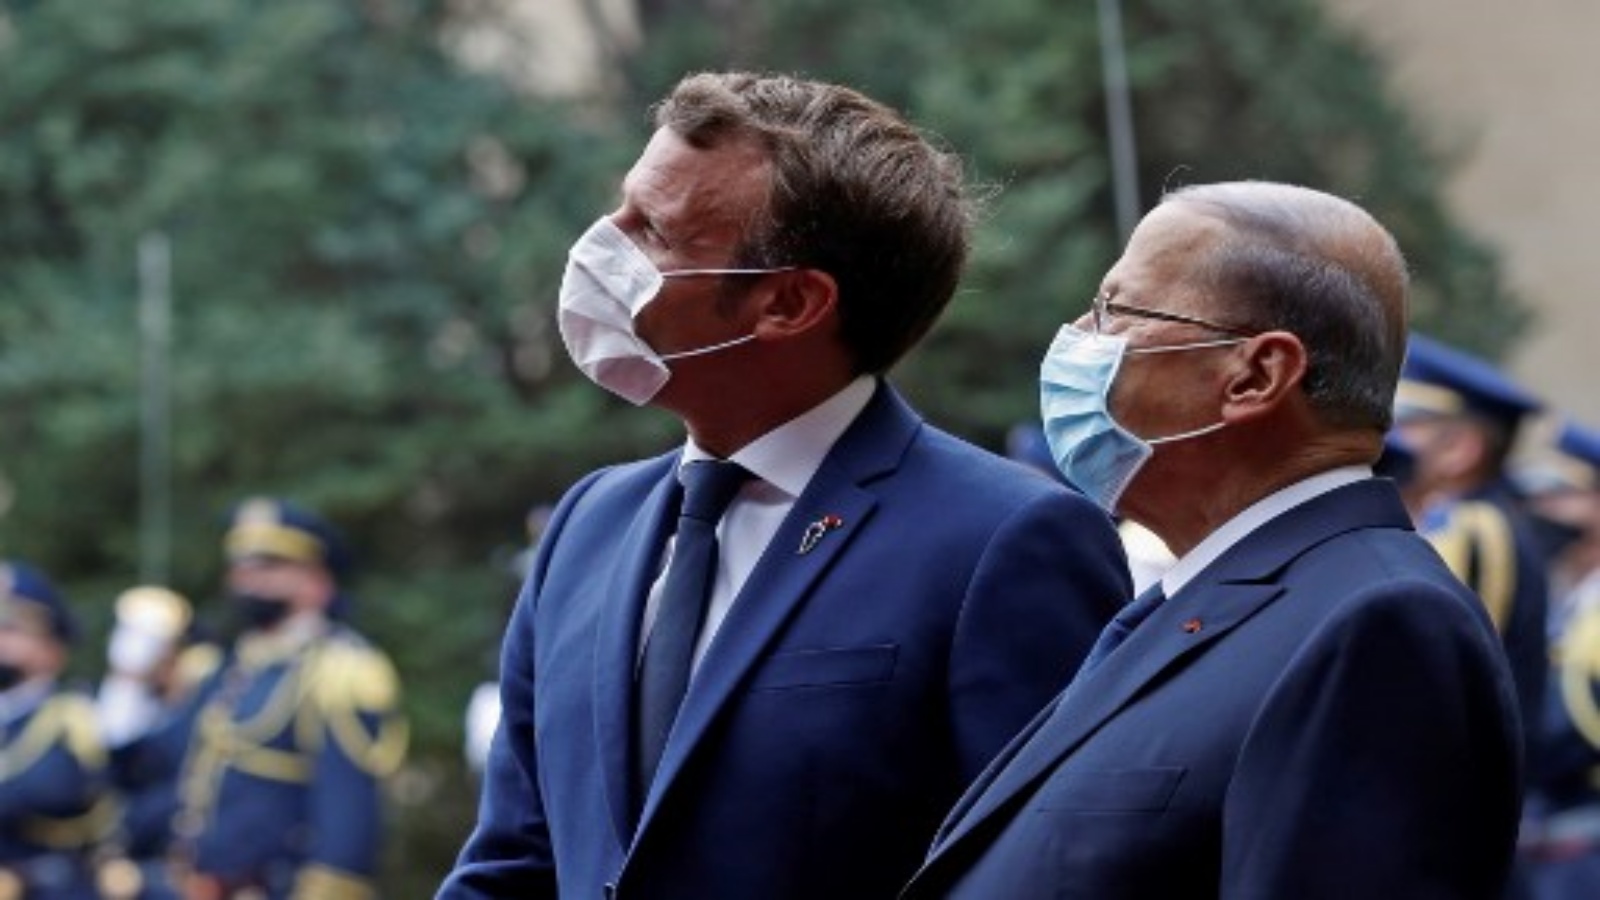 الرئيس الفرنسي إيمانويل ماكرون (إلى اليسار) يلتقي بالرئيس اللبناني ميشال عون في القصر الرئاسي في بعبدا ببيروت